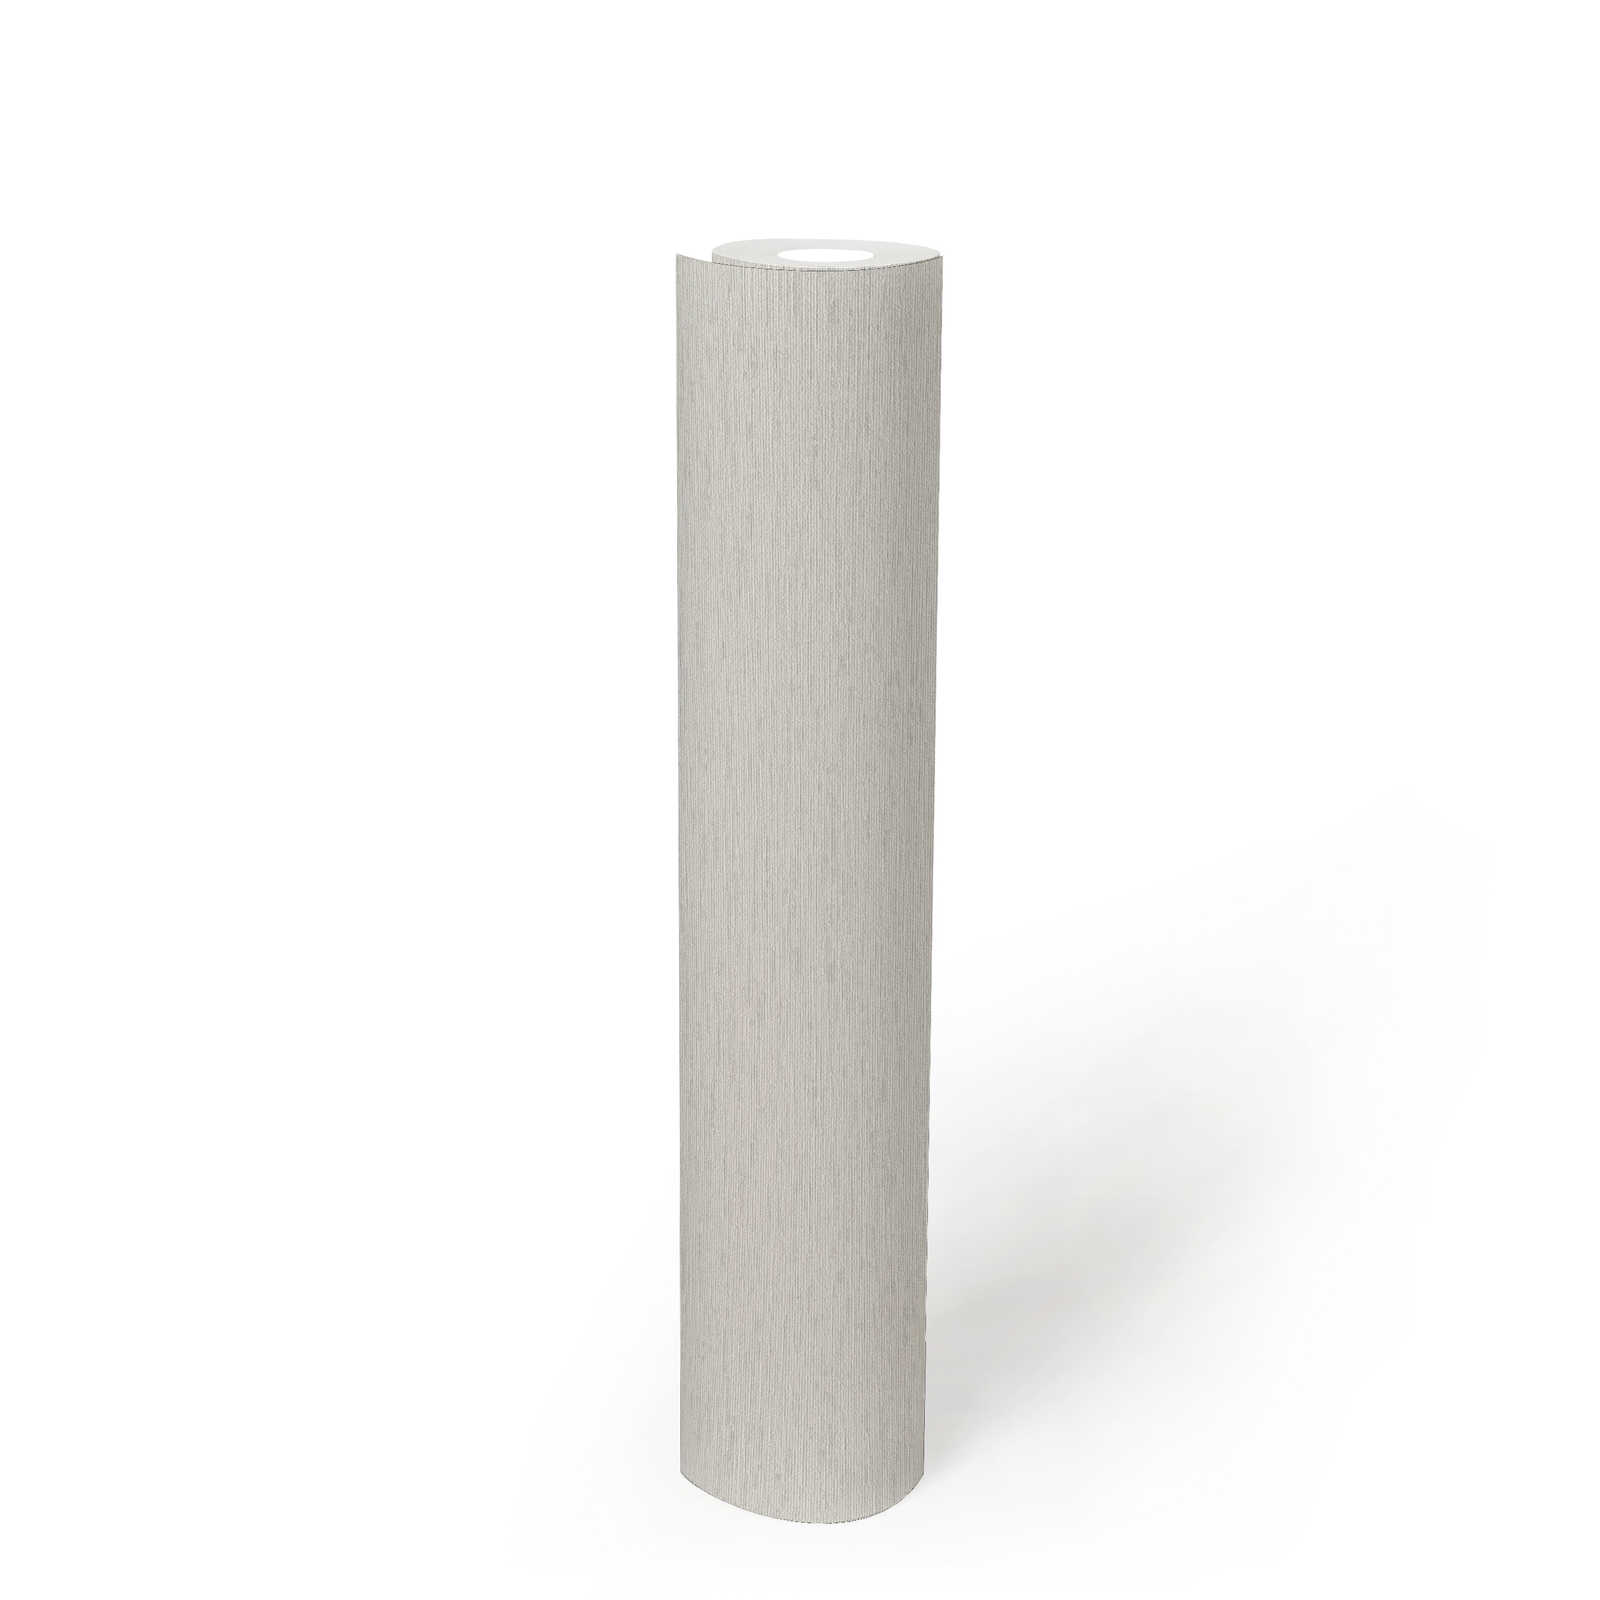             papier peint en papier intissé uni avec structure textile, mat - blanc, gris clair
        